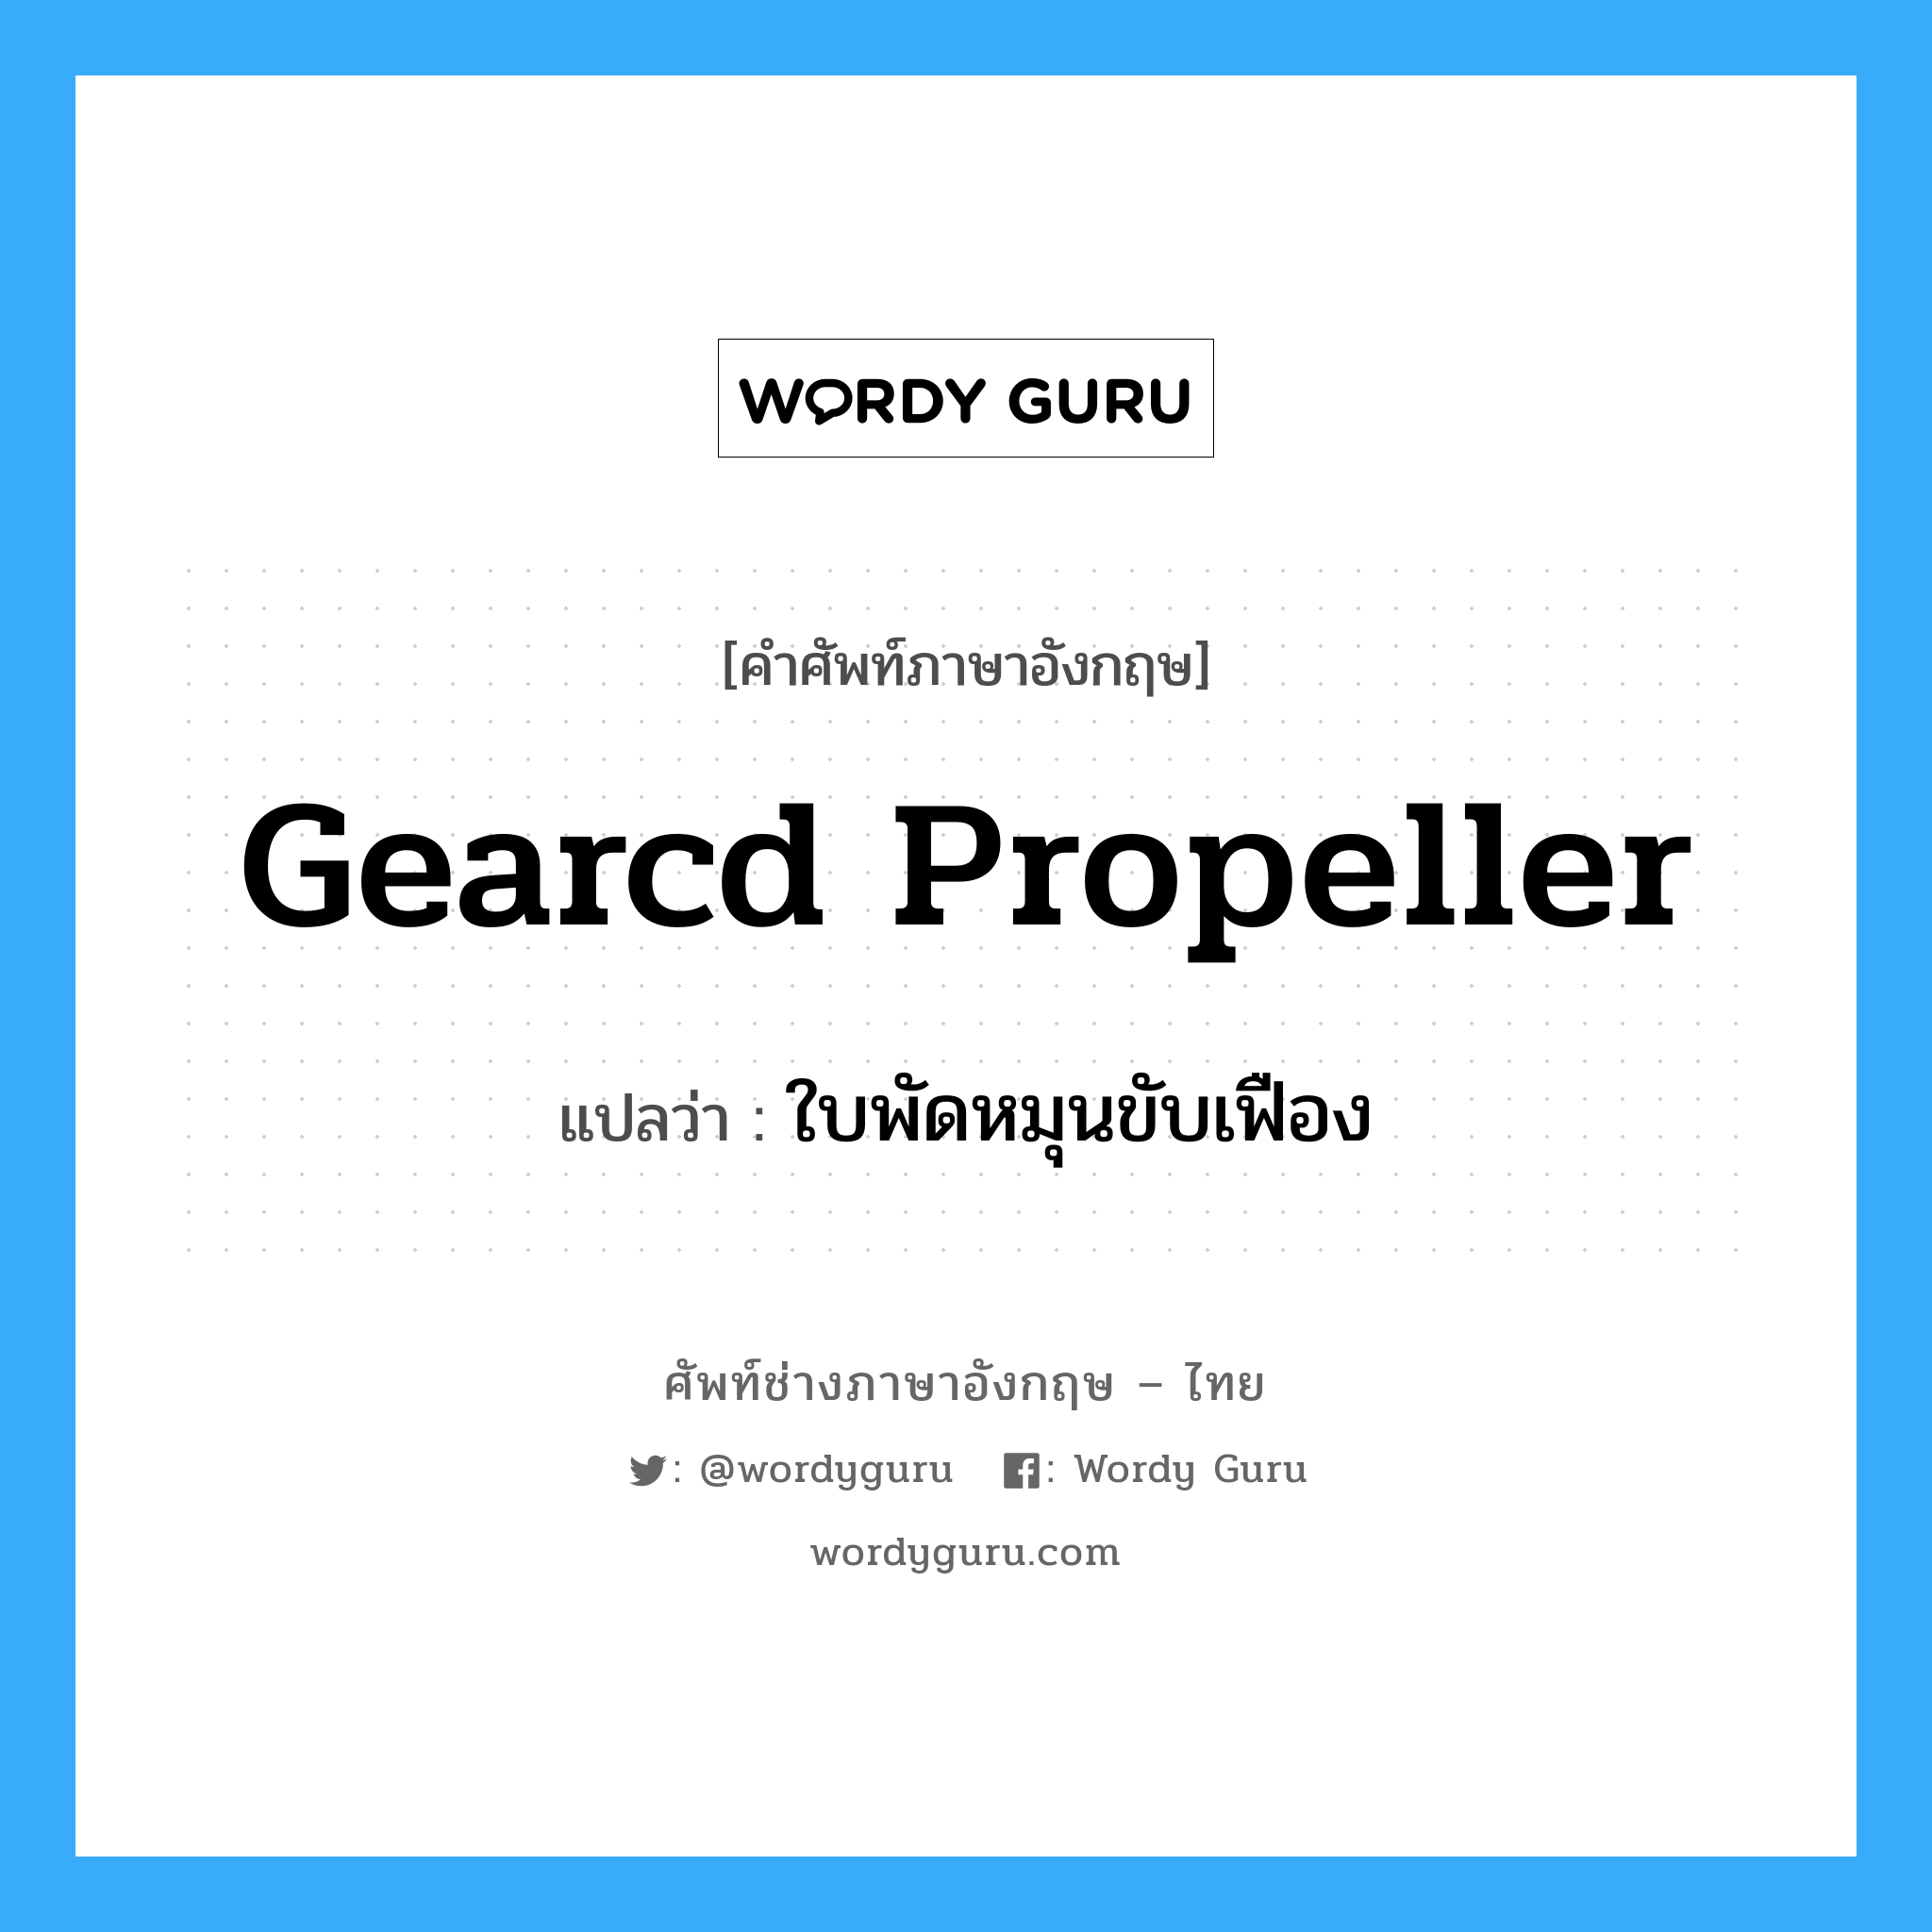 gearcd propeller แปลว่า?, คำศัพท์ช่างภาษาอังกฤษ - ไทย gearcd propeller คำศัพท์ภาษาอังกฤษ gearcd propeller แปลว่า ใบพัดหมุนขับเฟือง